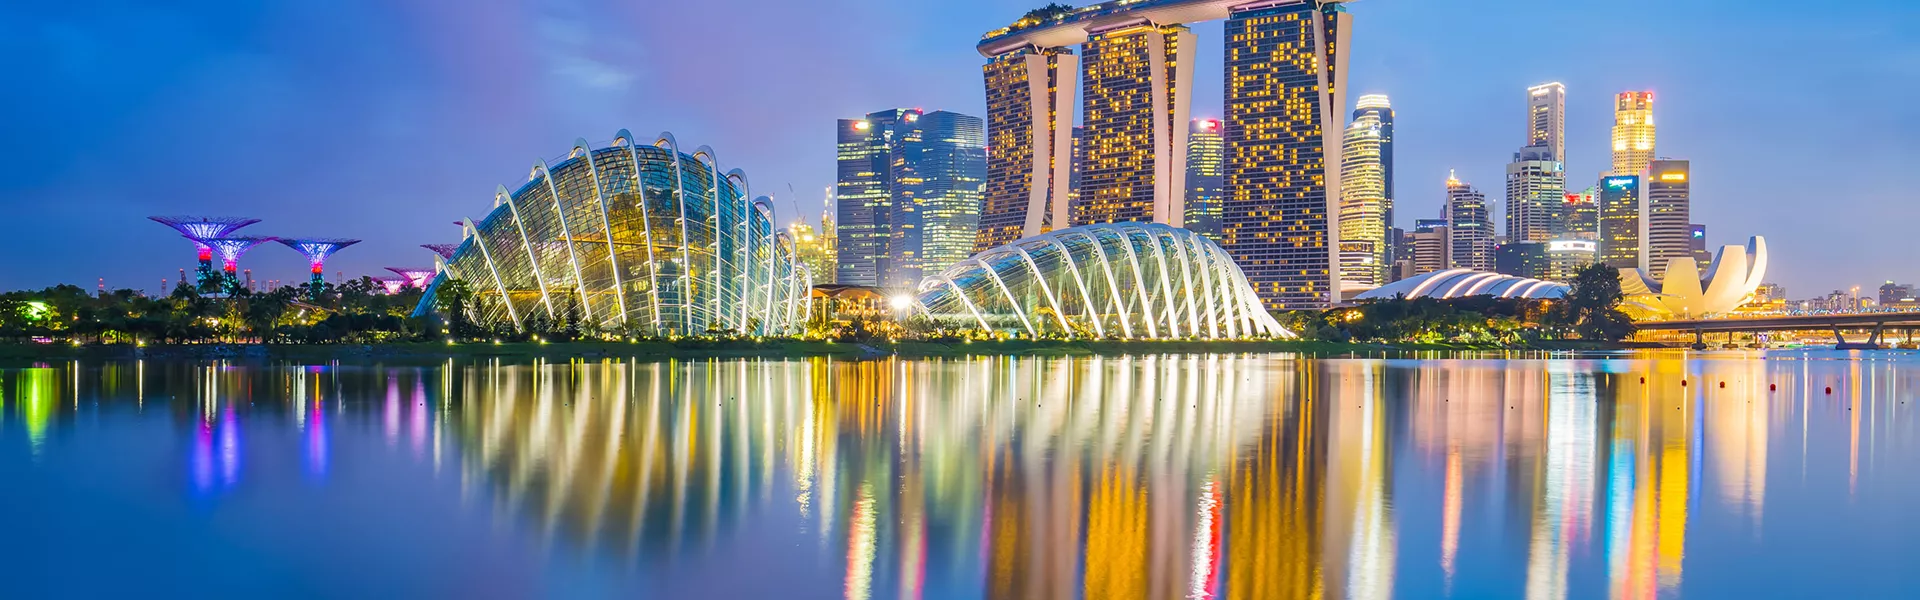 Singapore Skyline Scenic